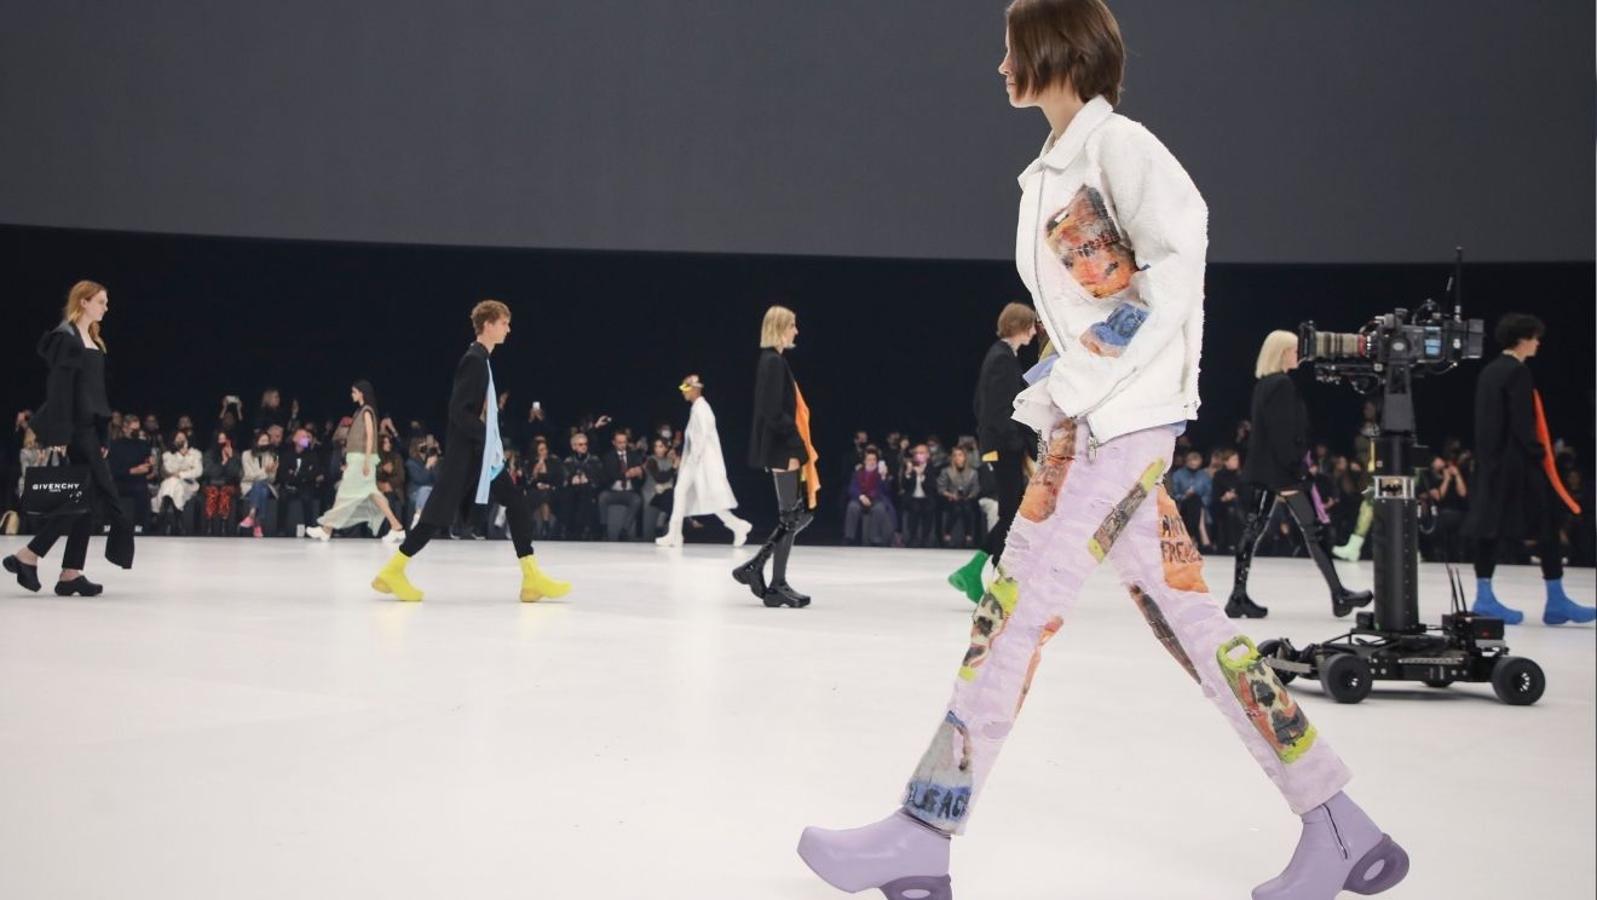 El futurismo ochentero de Vuitton cierra la pasarela parisina del